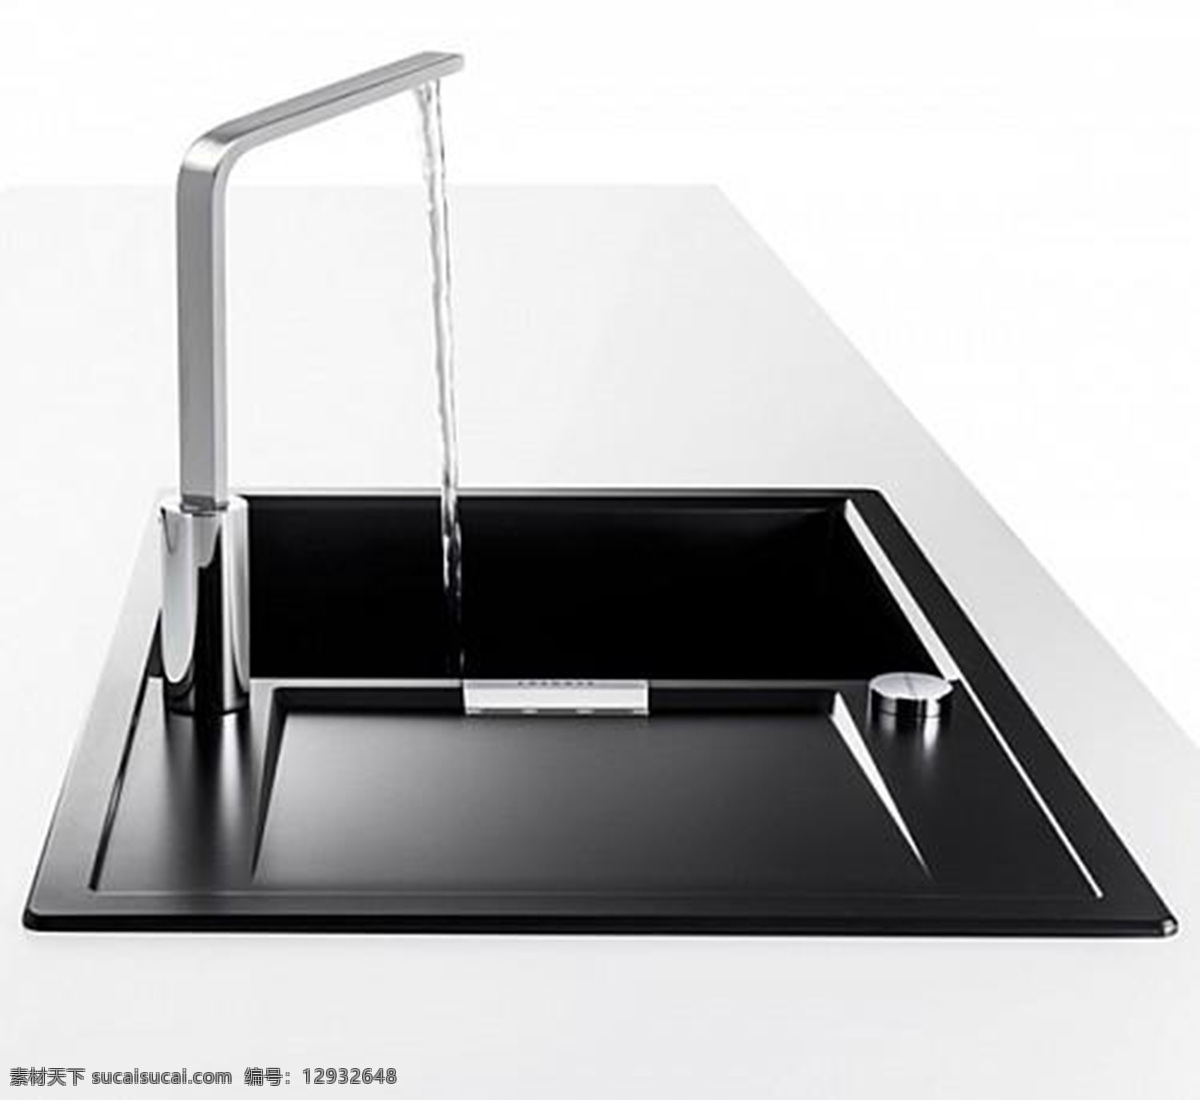 高大 上 水槽 产品设计 创意 凳子 工业设计 家居 生活